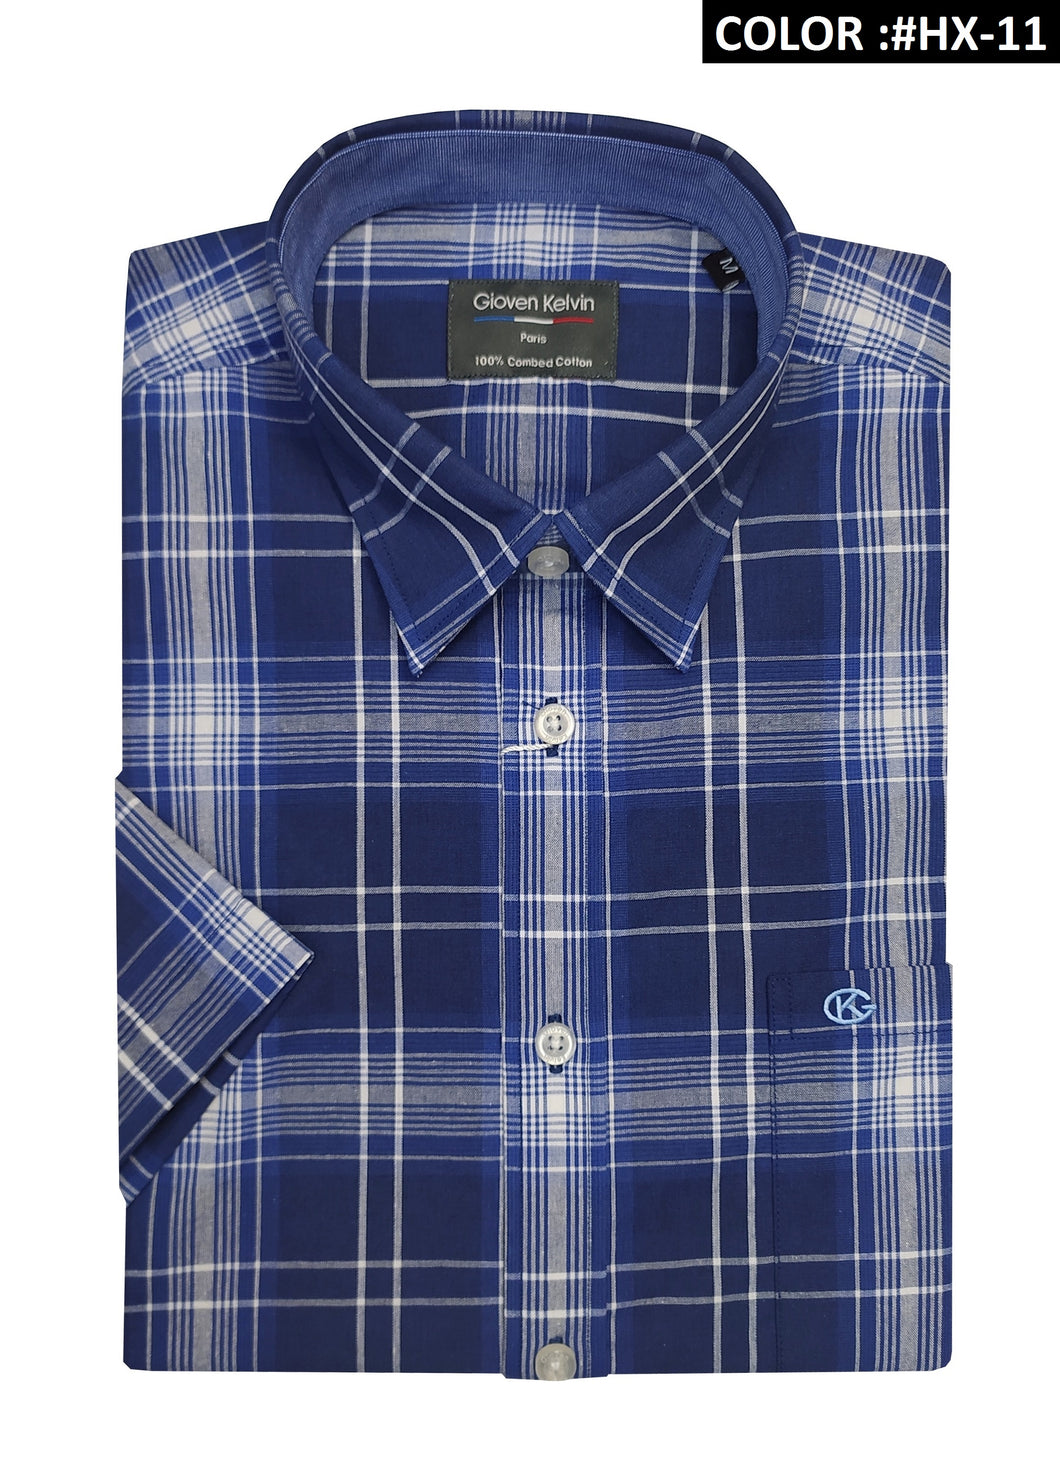 Gioven Kelvin Short Sleeve shirt GK-22301 #HX-11